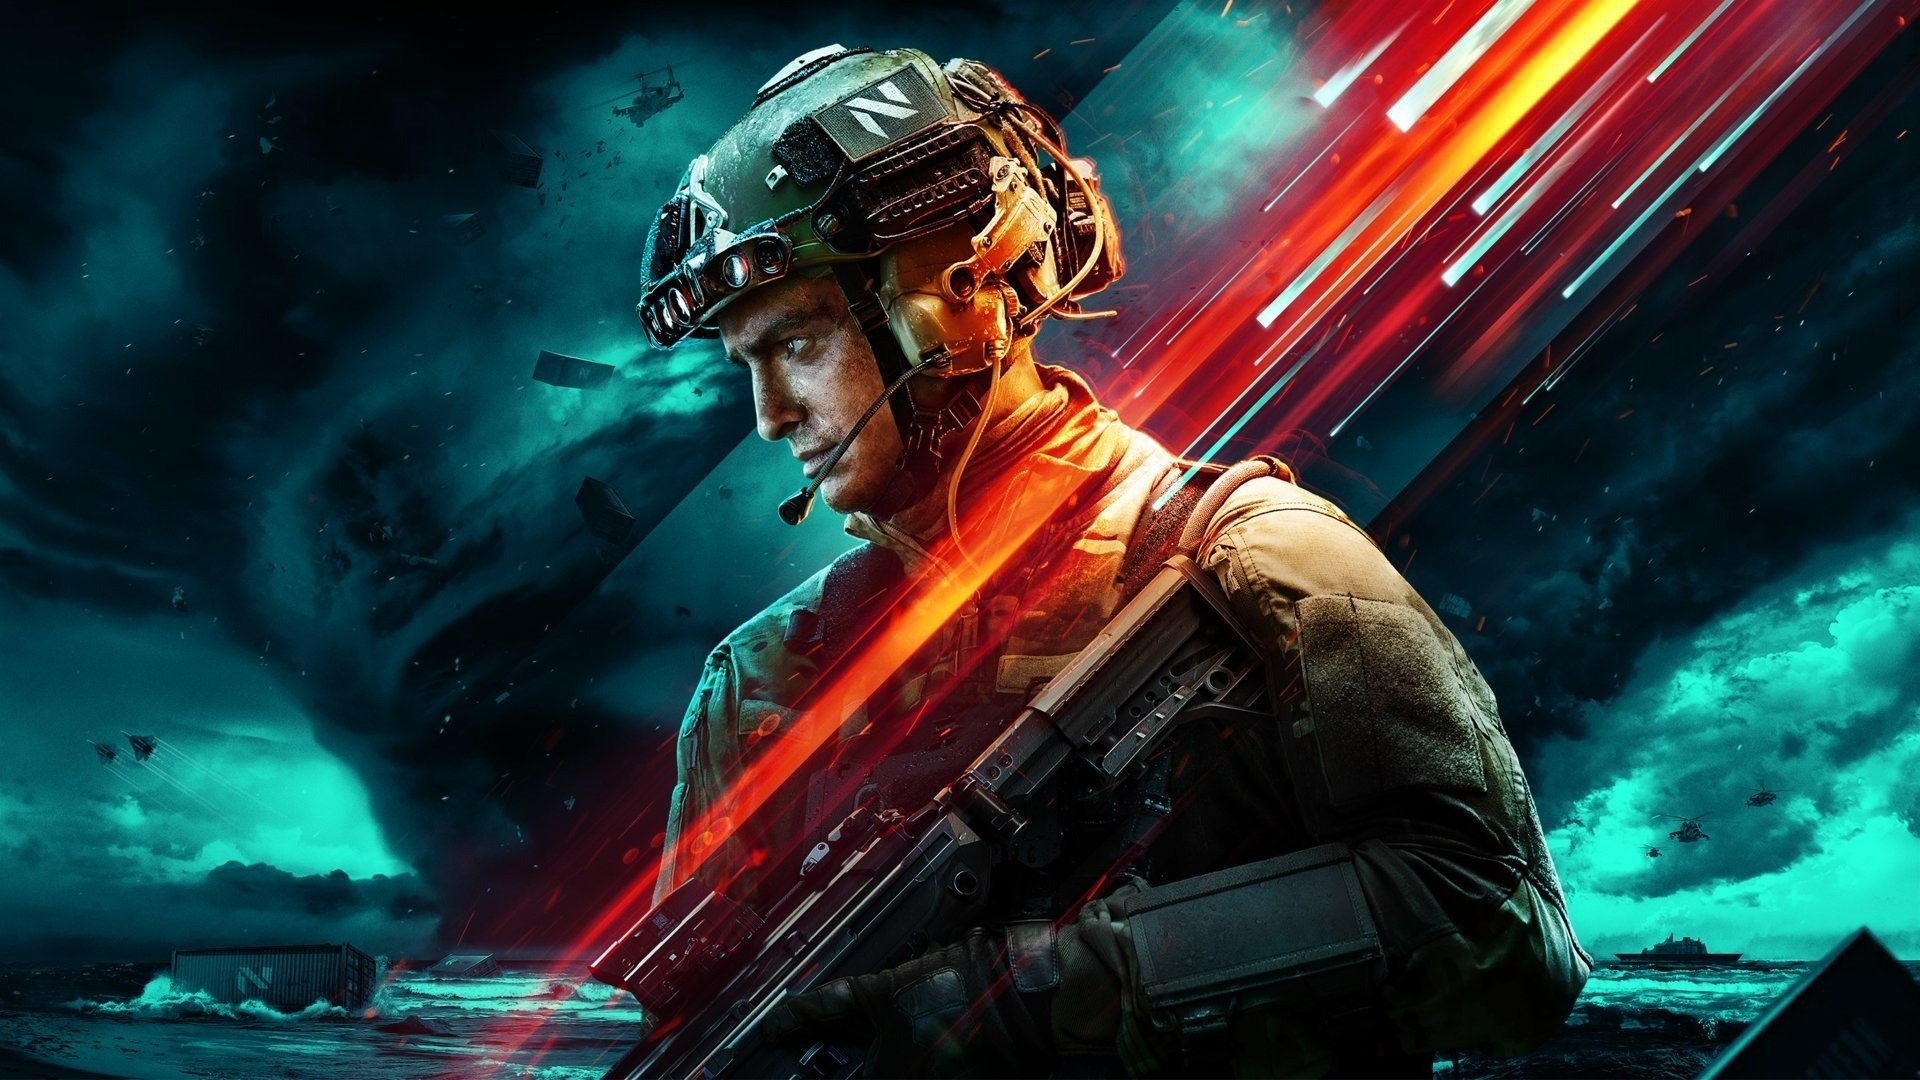 Battlefield 2042: Requisitos Mínimos de PC e Data da Versão Beta são  revelados